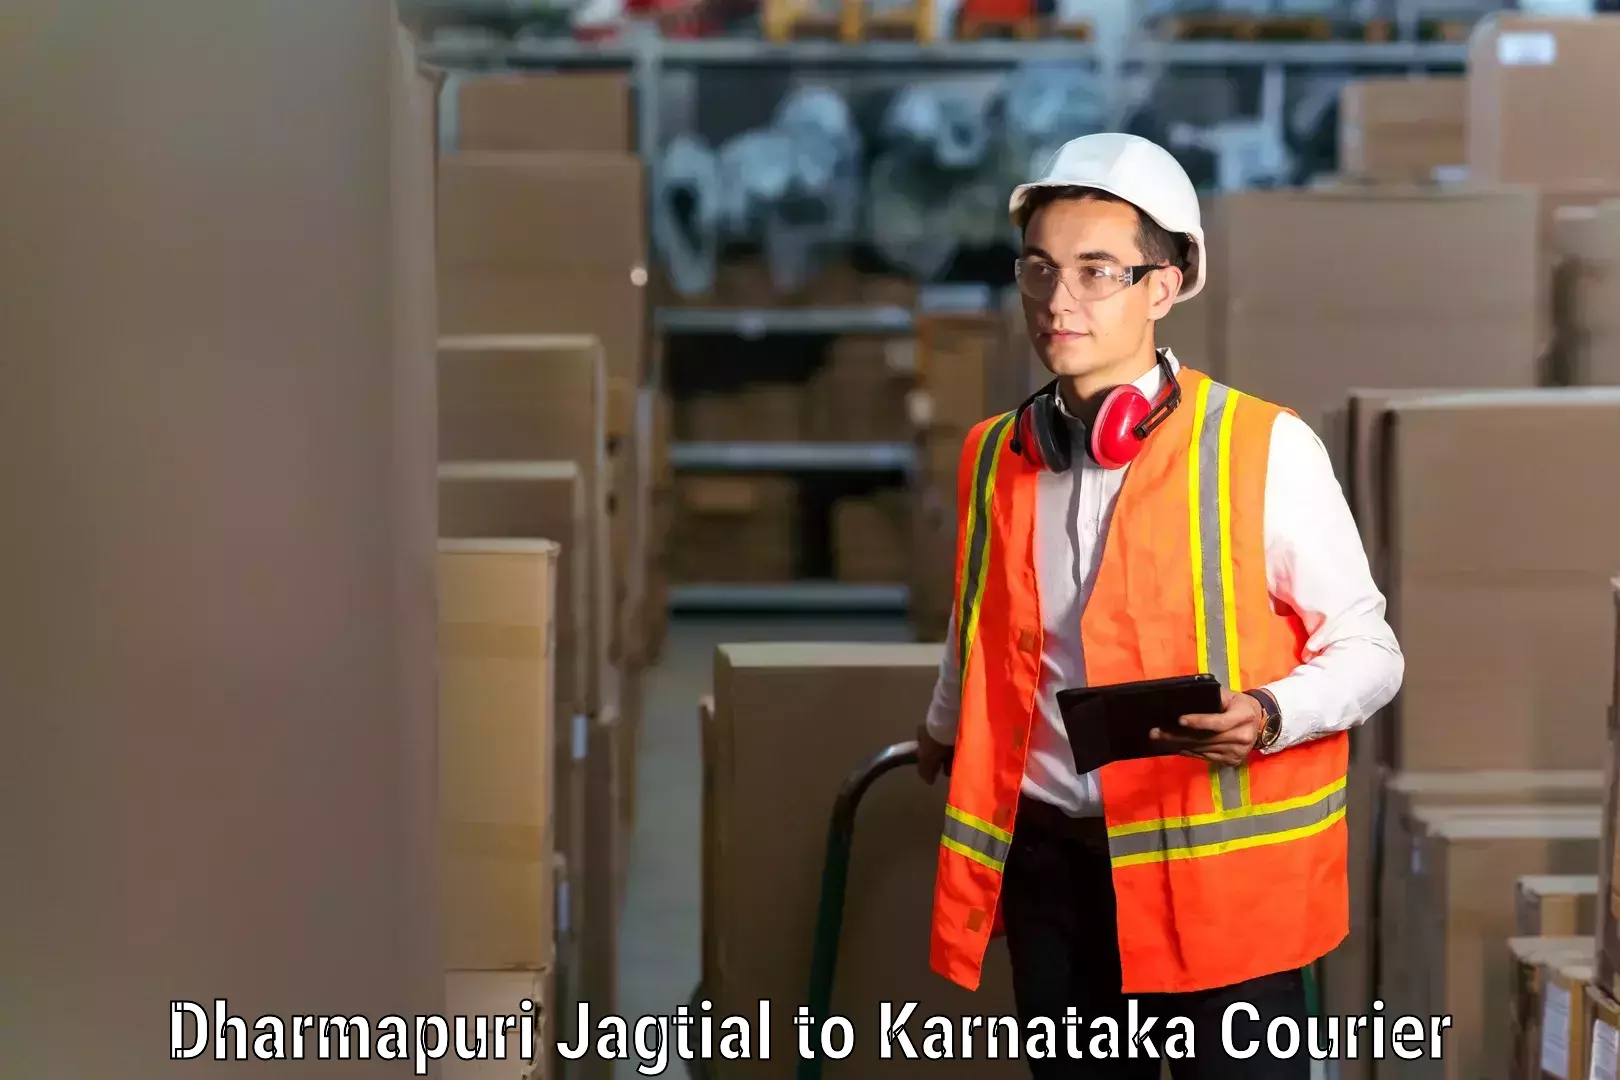 Expert furniture movers Dharmapuri Jagtial to Tumkur